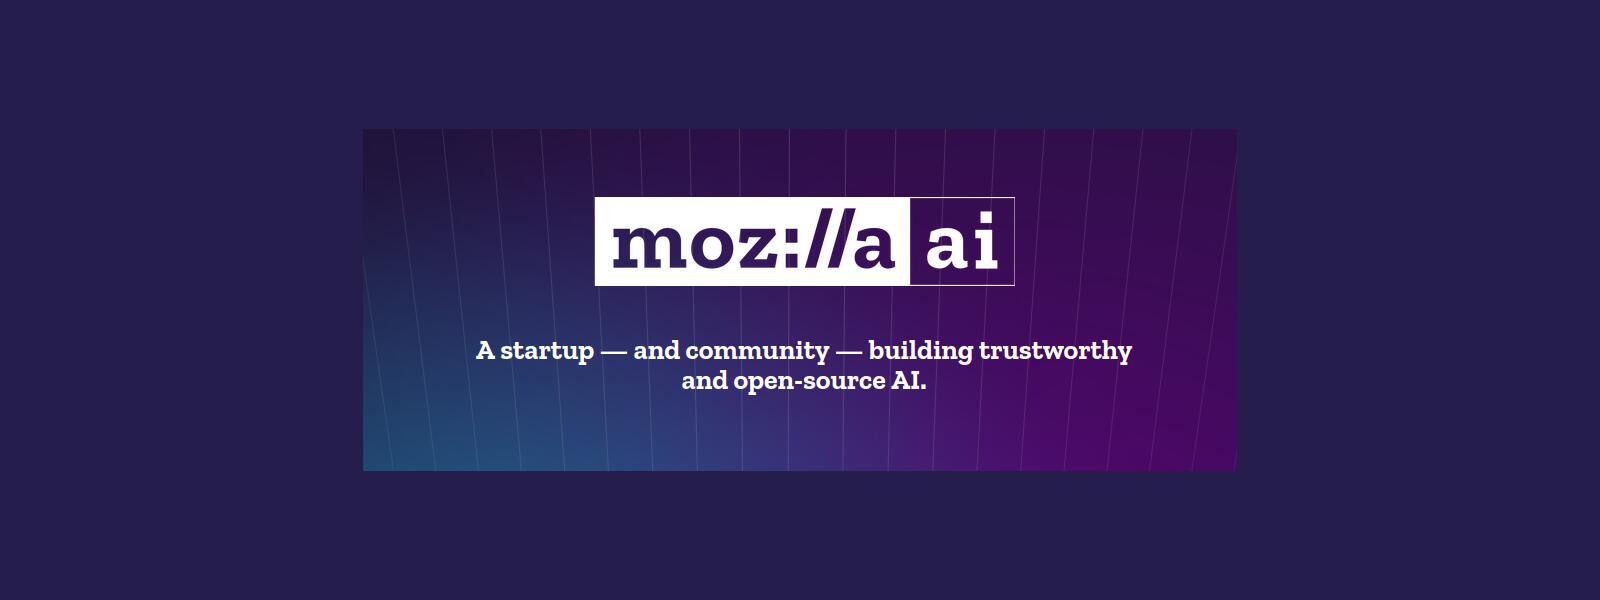 Mozilla.ai, inteligencia artificial